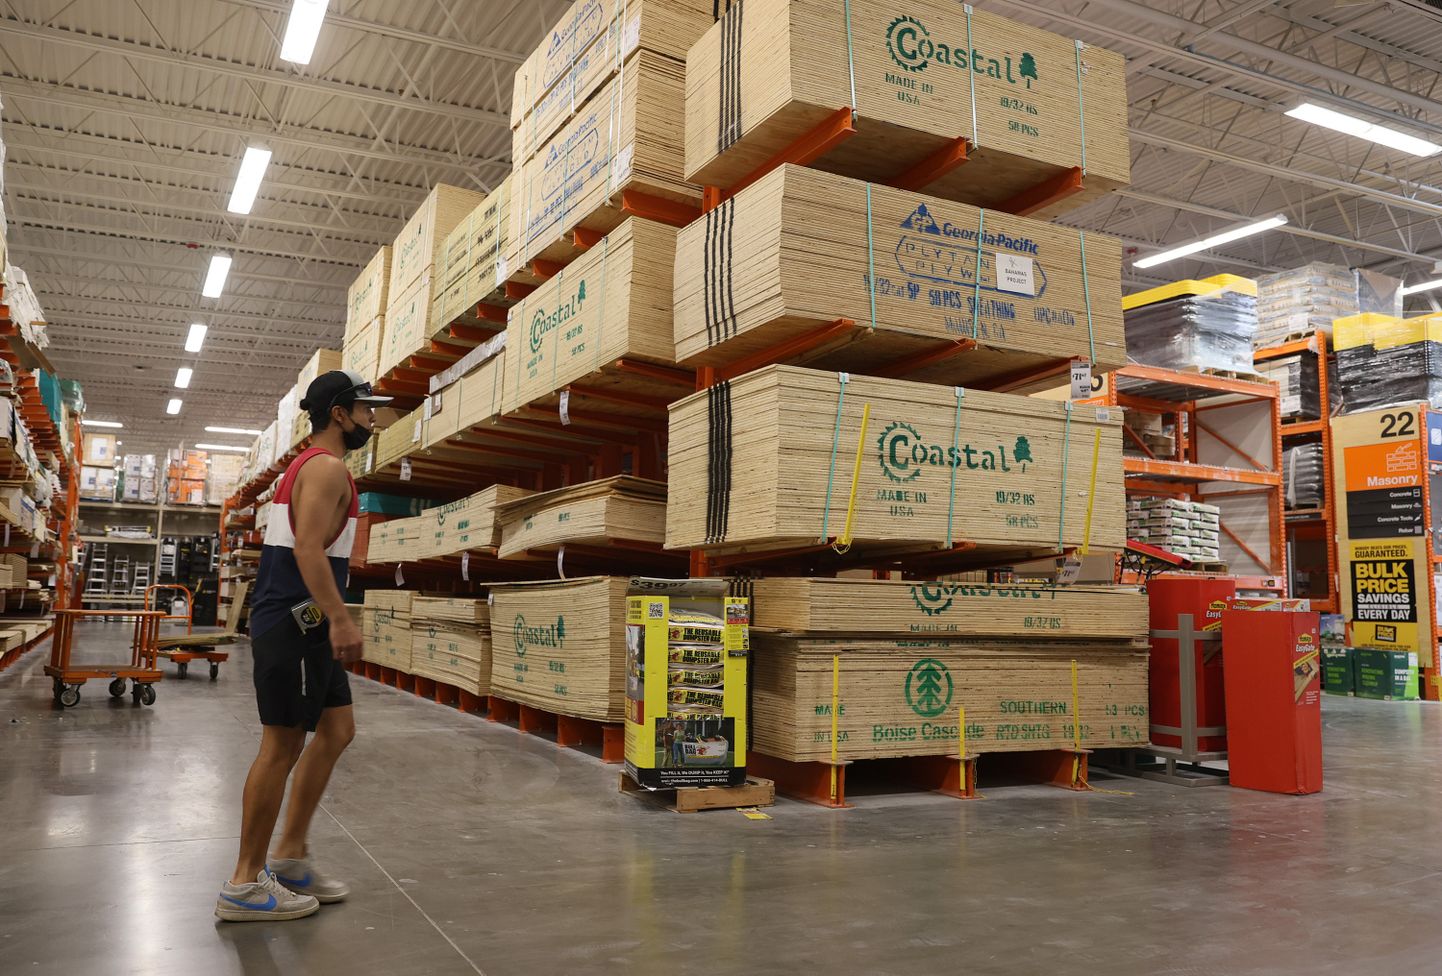 Динамика цен на строительную древесину на мировом рынке в более широком смысле отражает состояние всей экономики. На фото магазин Home Depot, одной из крупнейших в мире сетей строительных магазинов во Флориде, США.